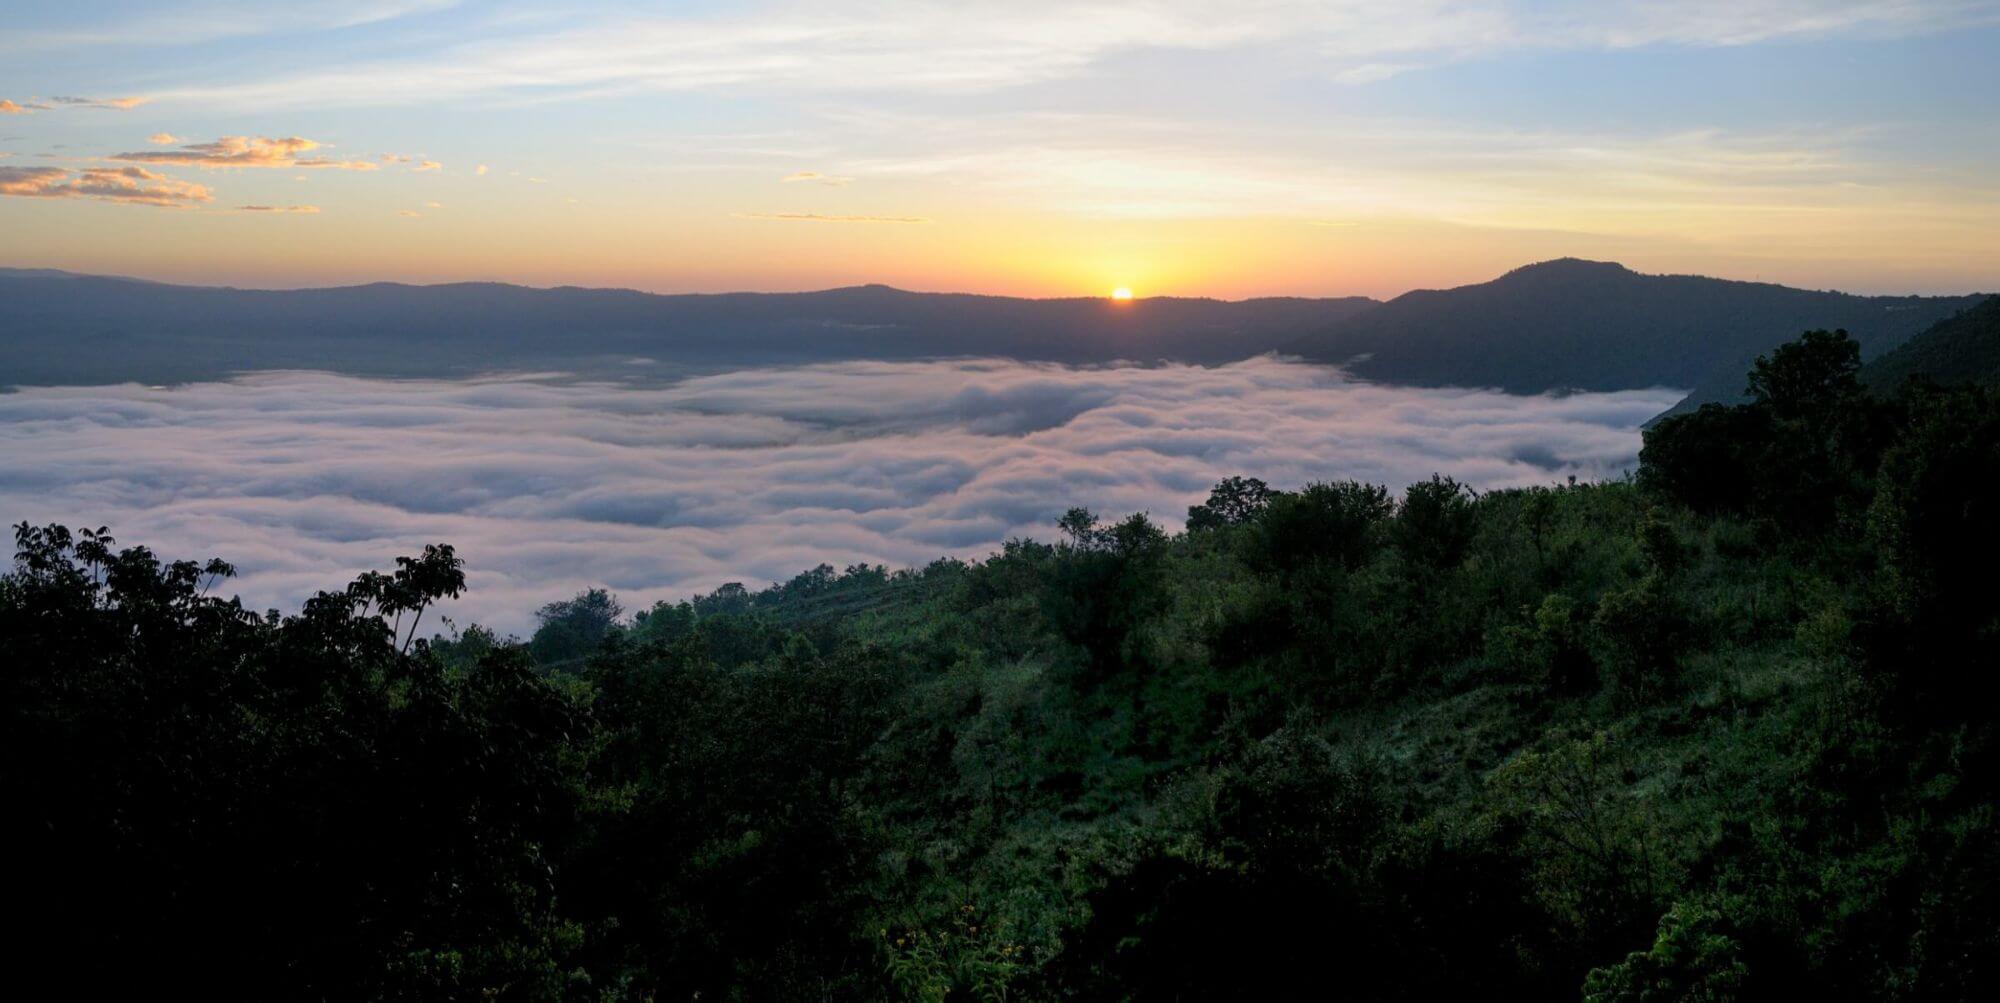 Ngorongoro Conservation Area image